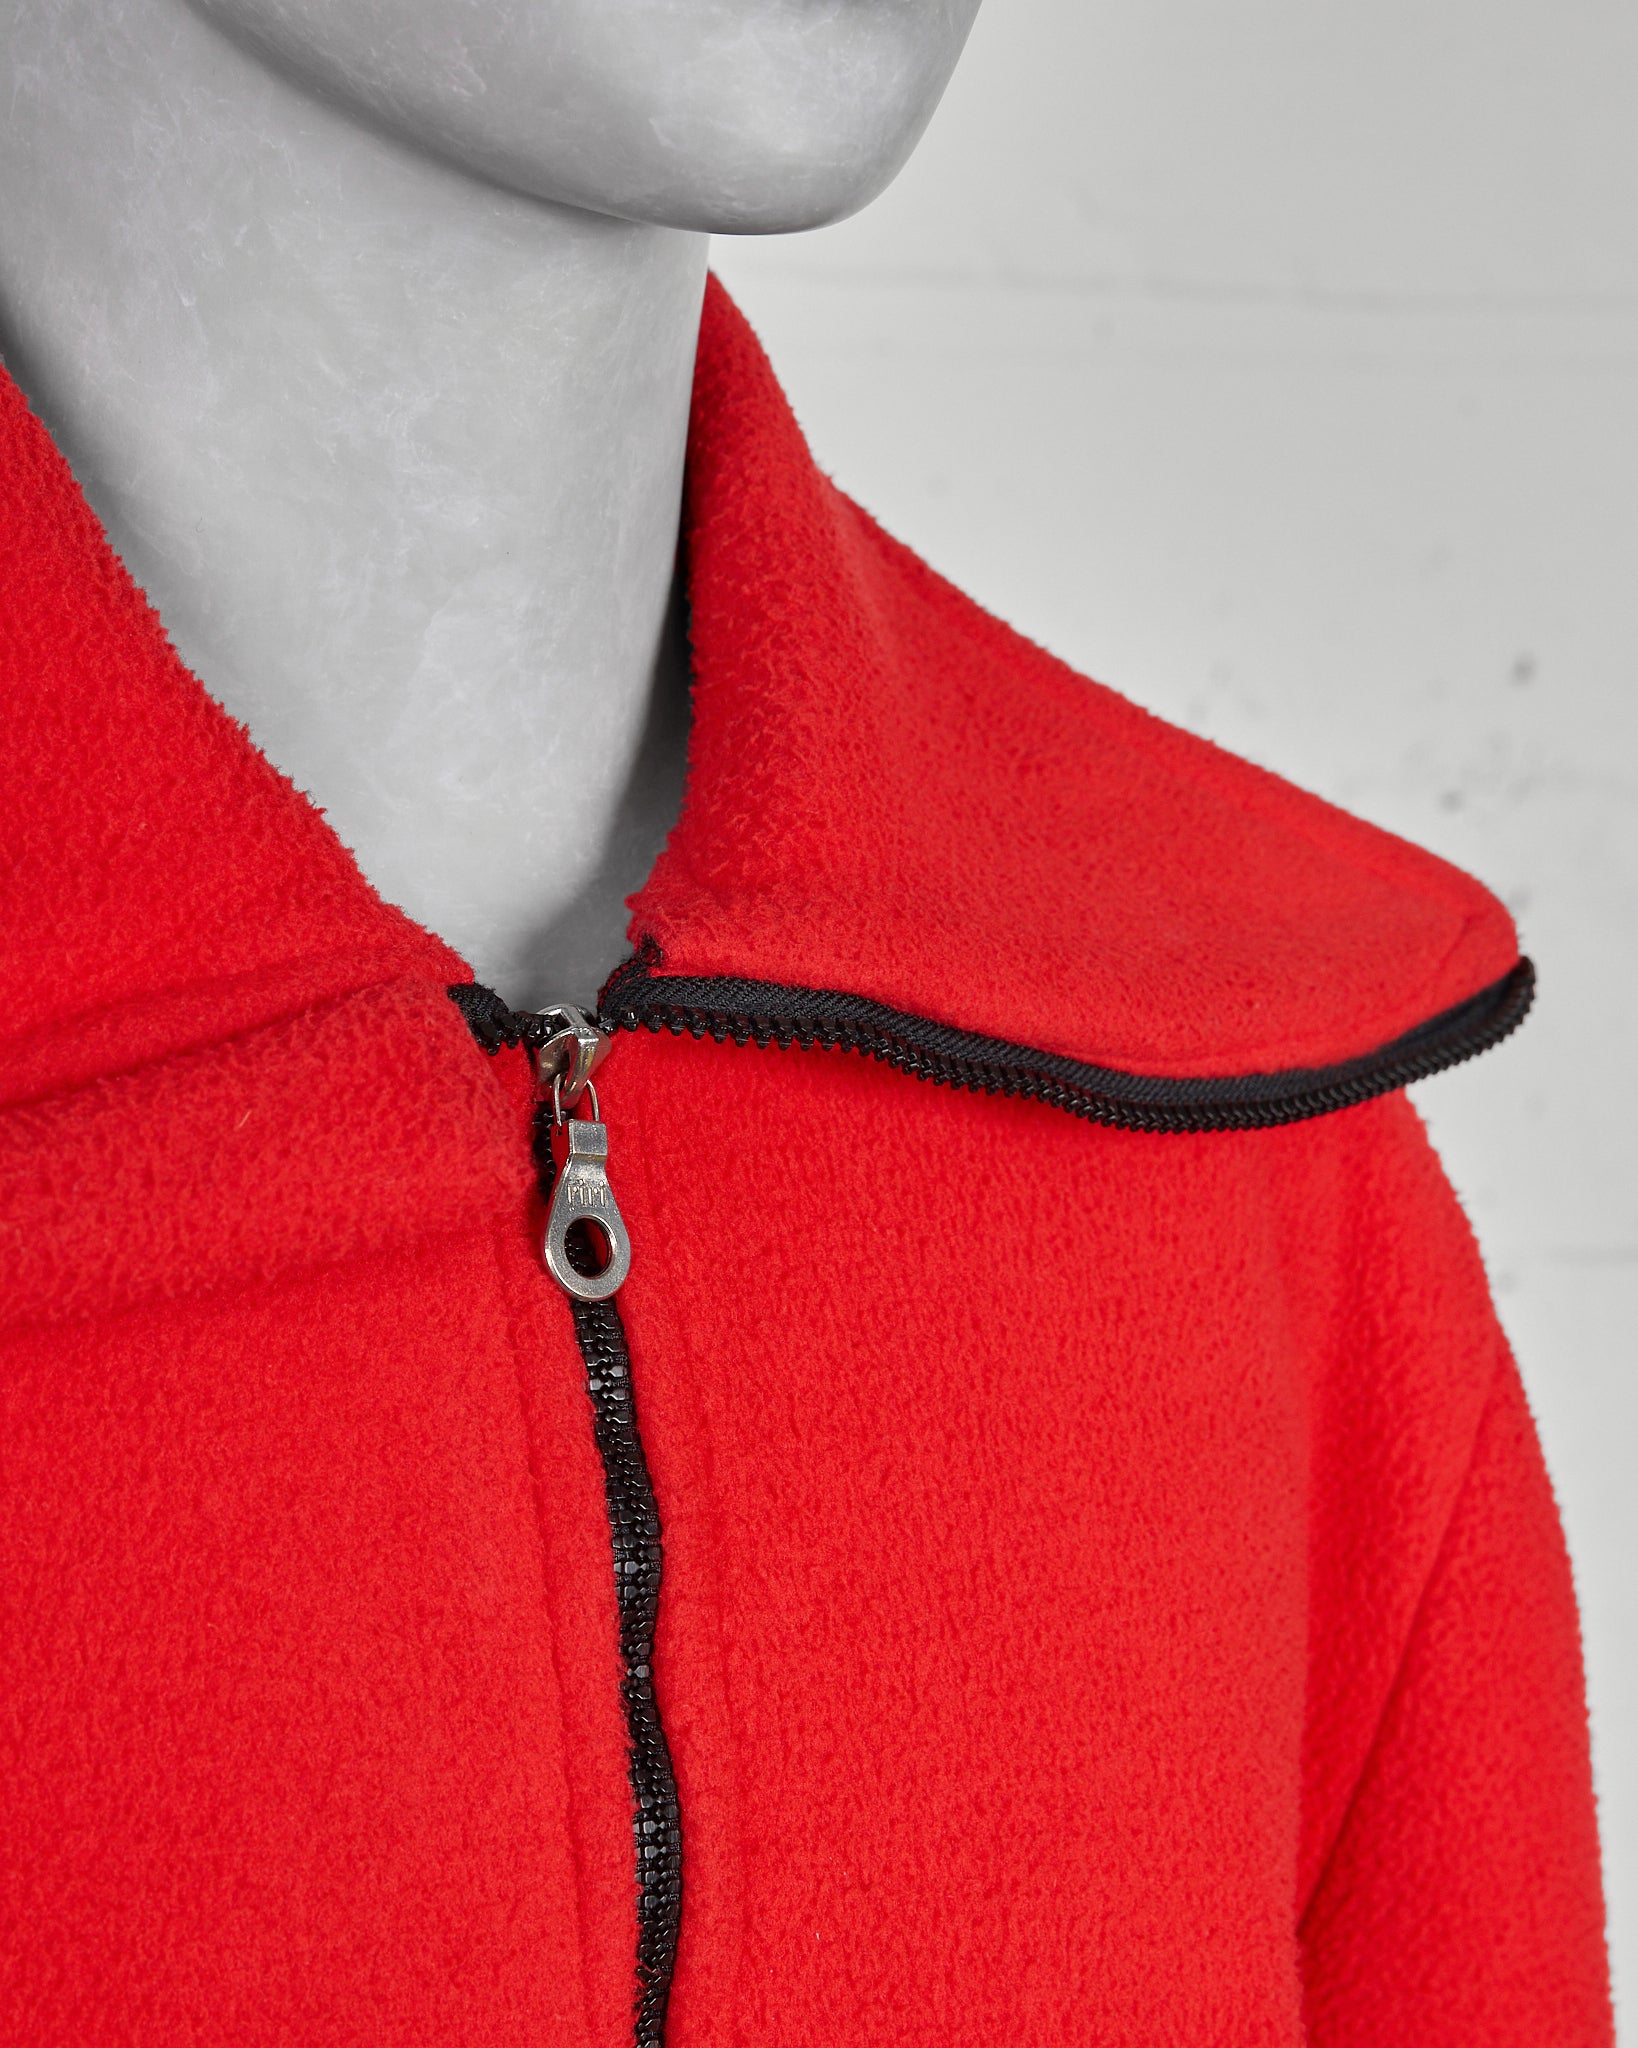 Vexed Generation Red Fleece High-Neck Ninja Jacket - 1997 neck detail photo